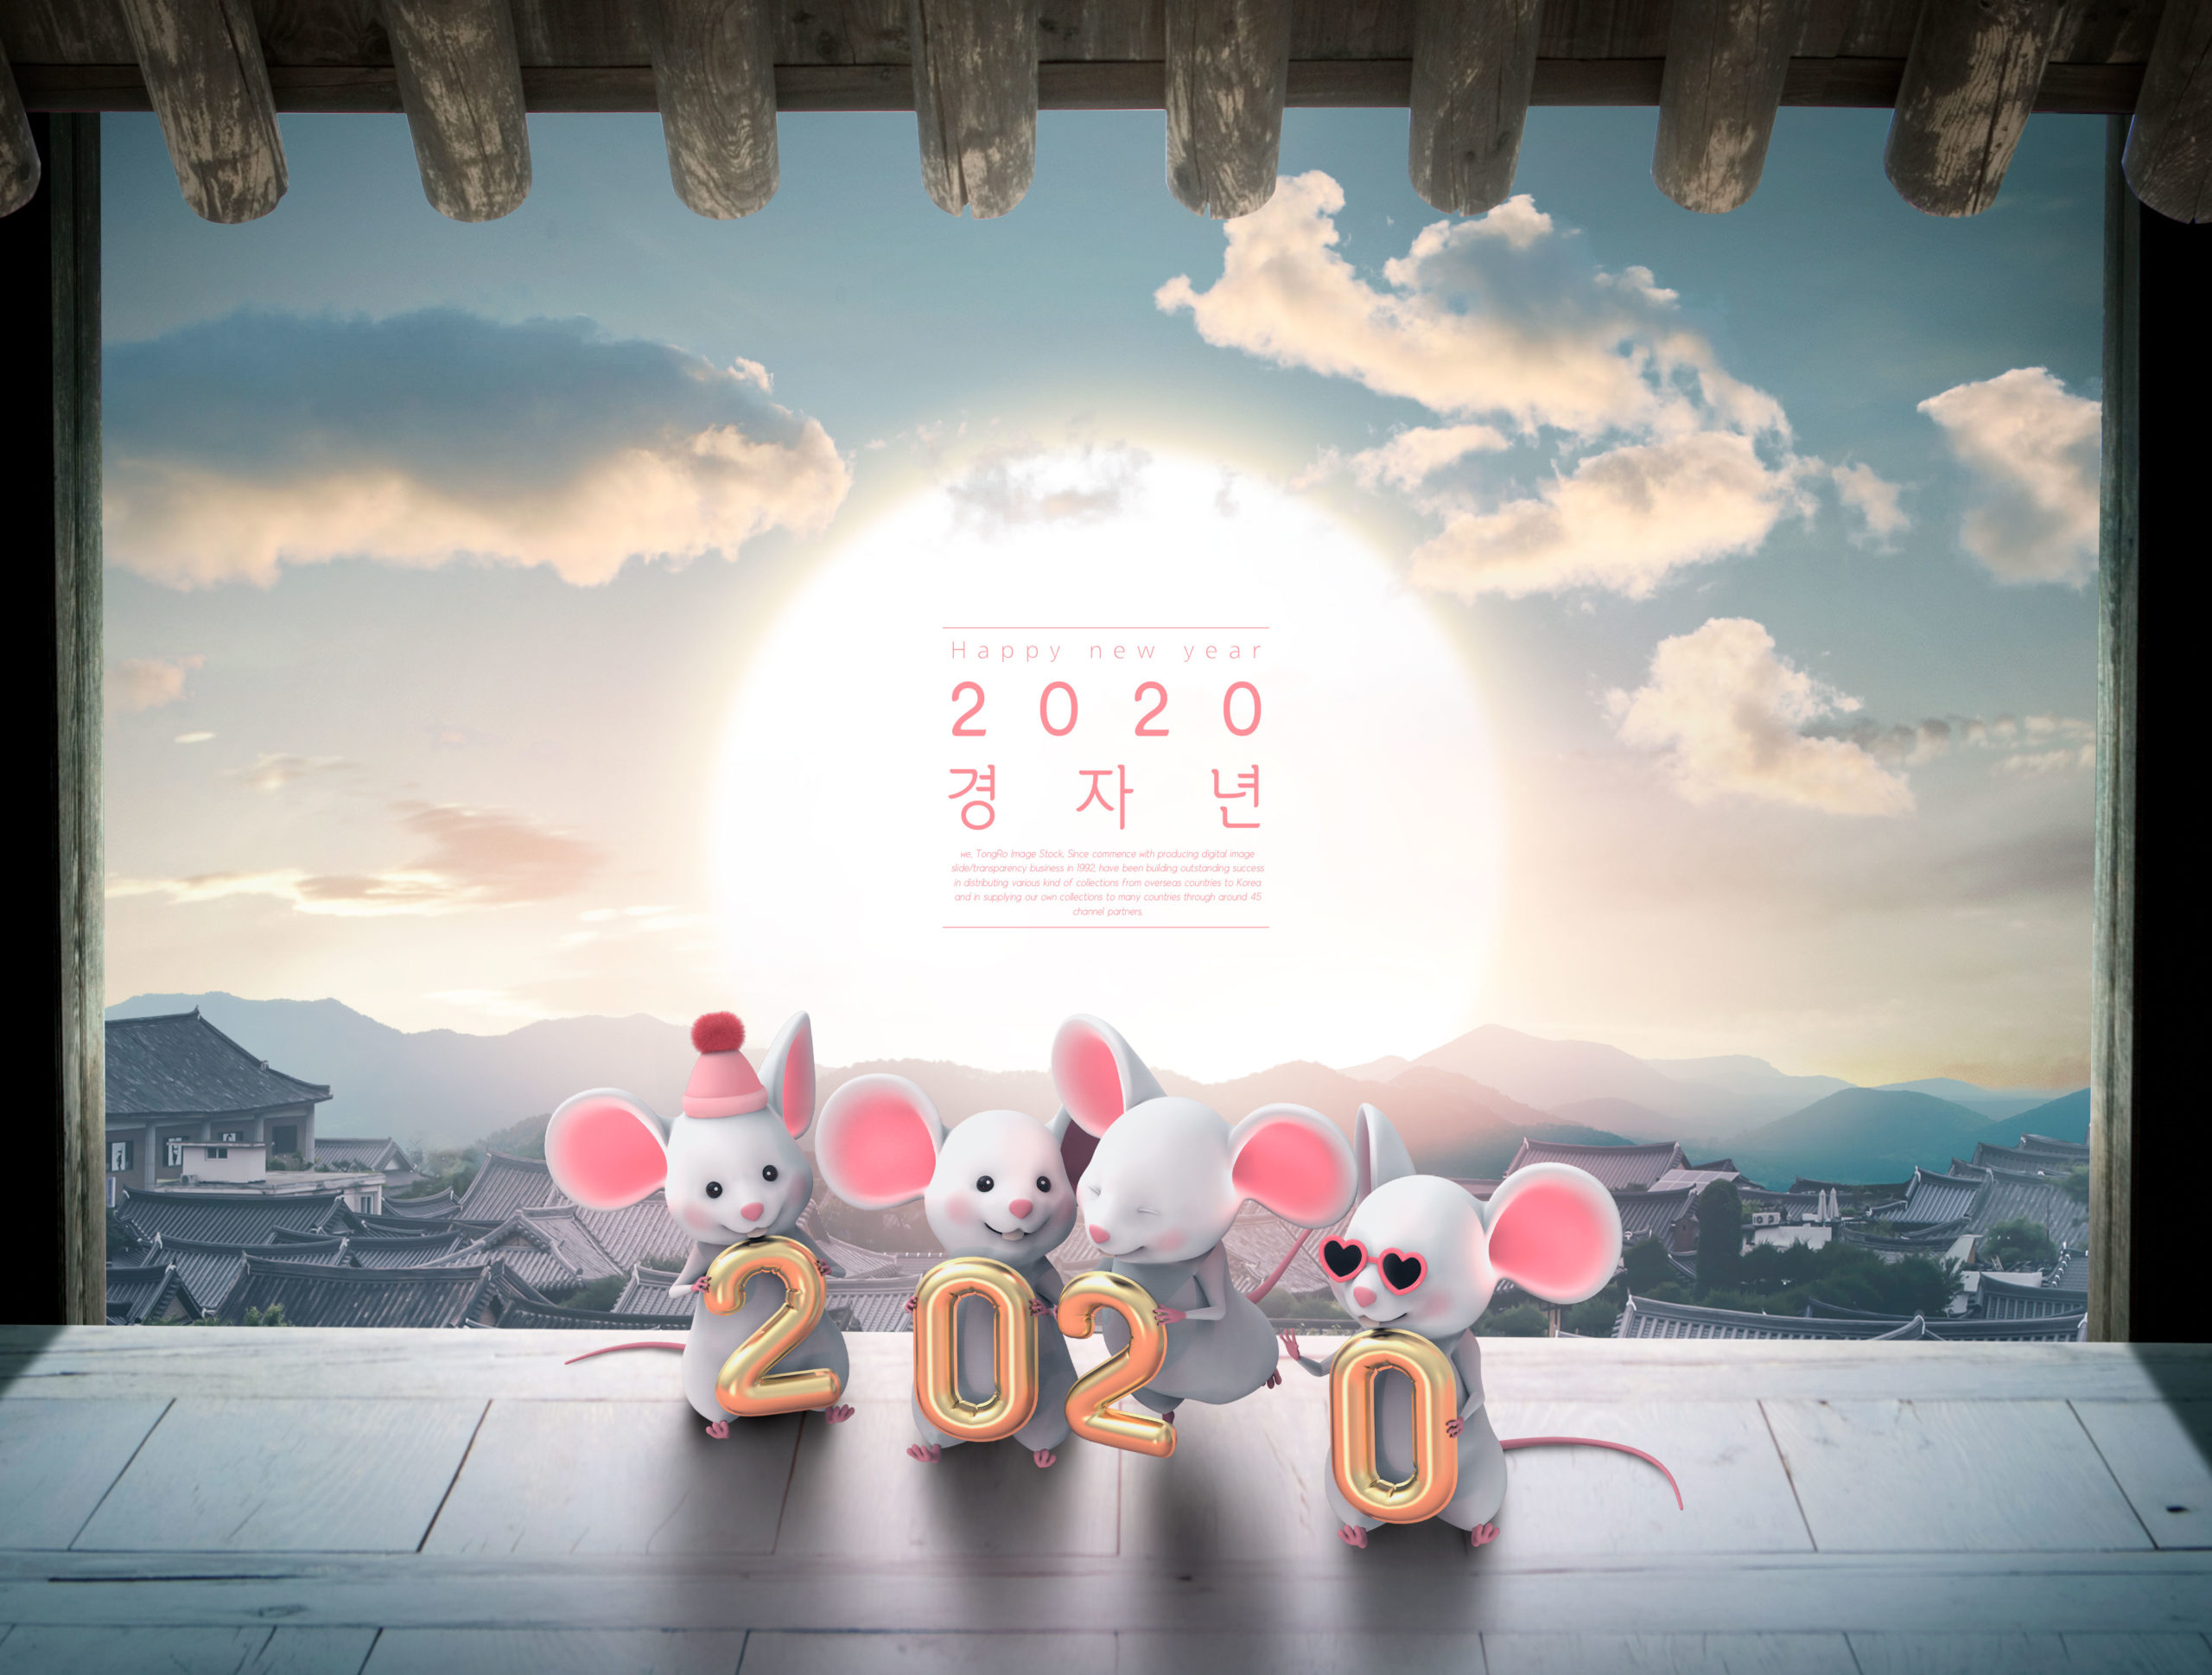 2020鼠年新年主题海报PSD素材第一素材精选素材插图